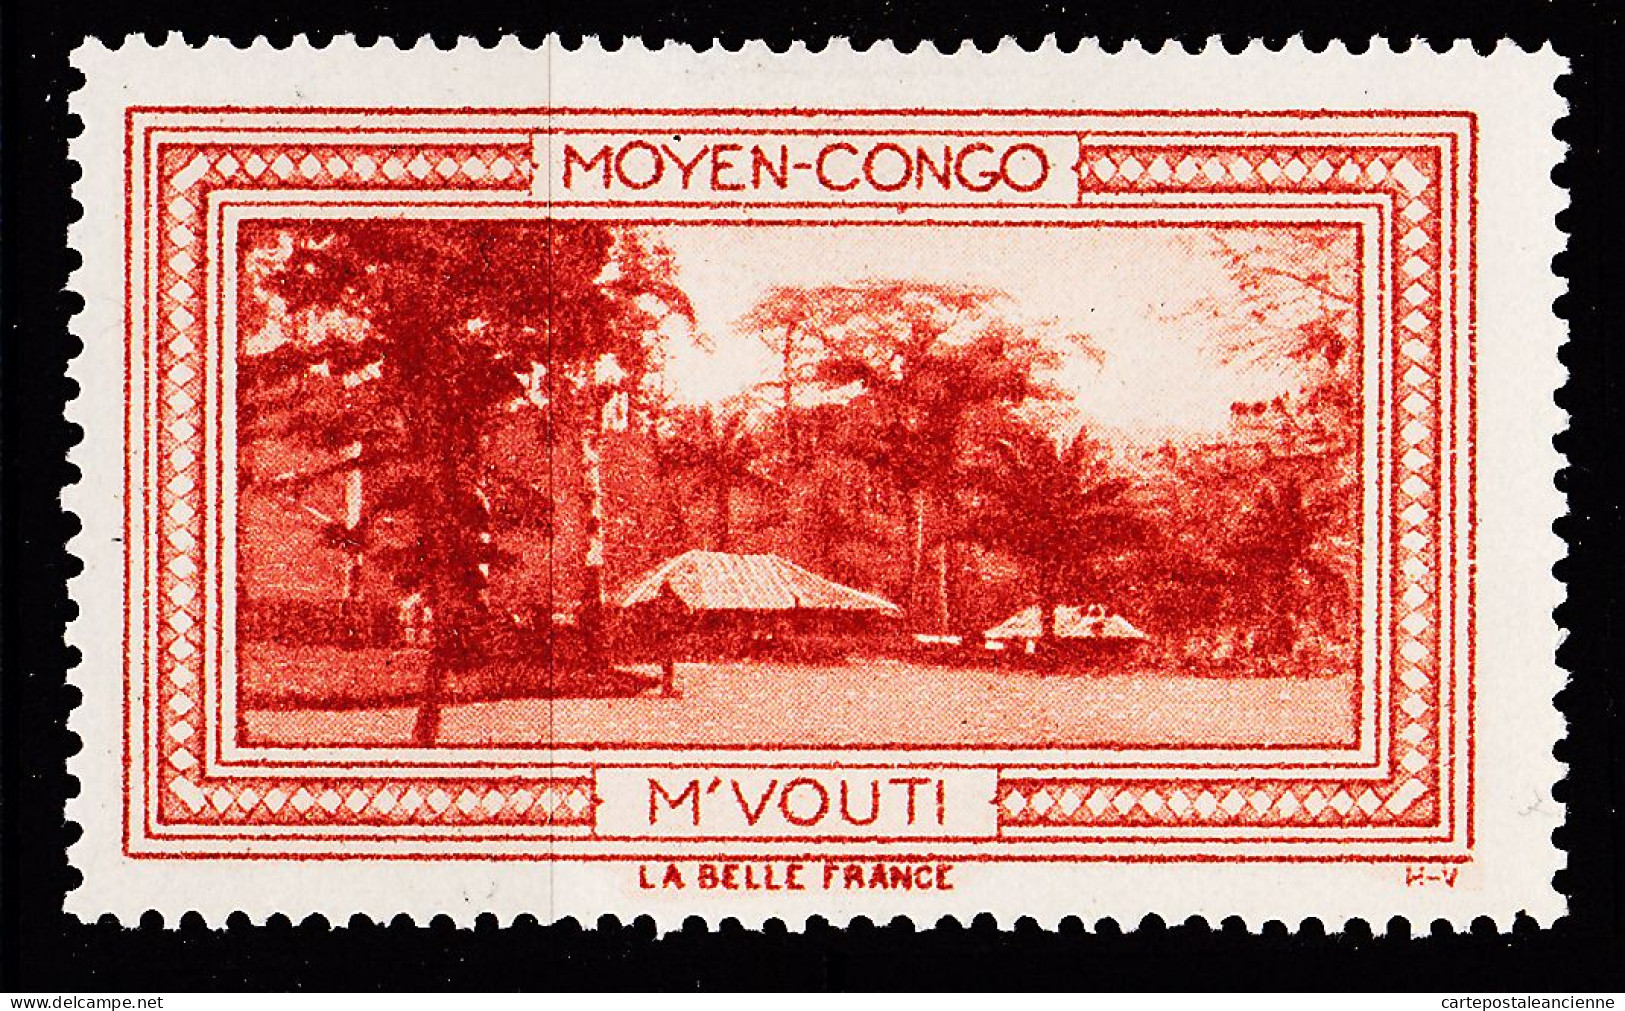 12971 ● M'VOUTI MOYEN-CONGO Vignette De Collection LA BELLE FRANCE 1925s H-V Erinnophilie - Tourisme (Vignettes)